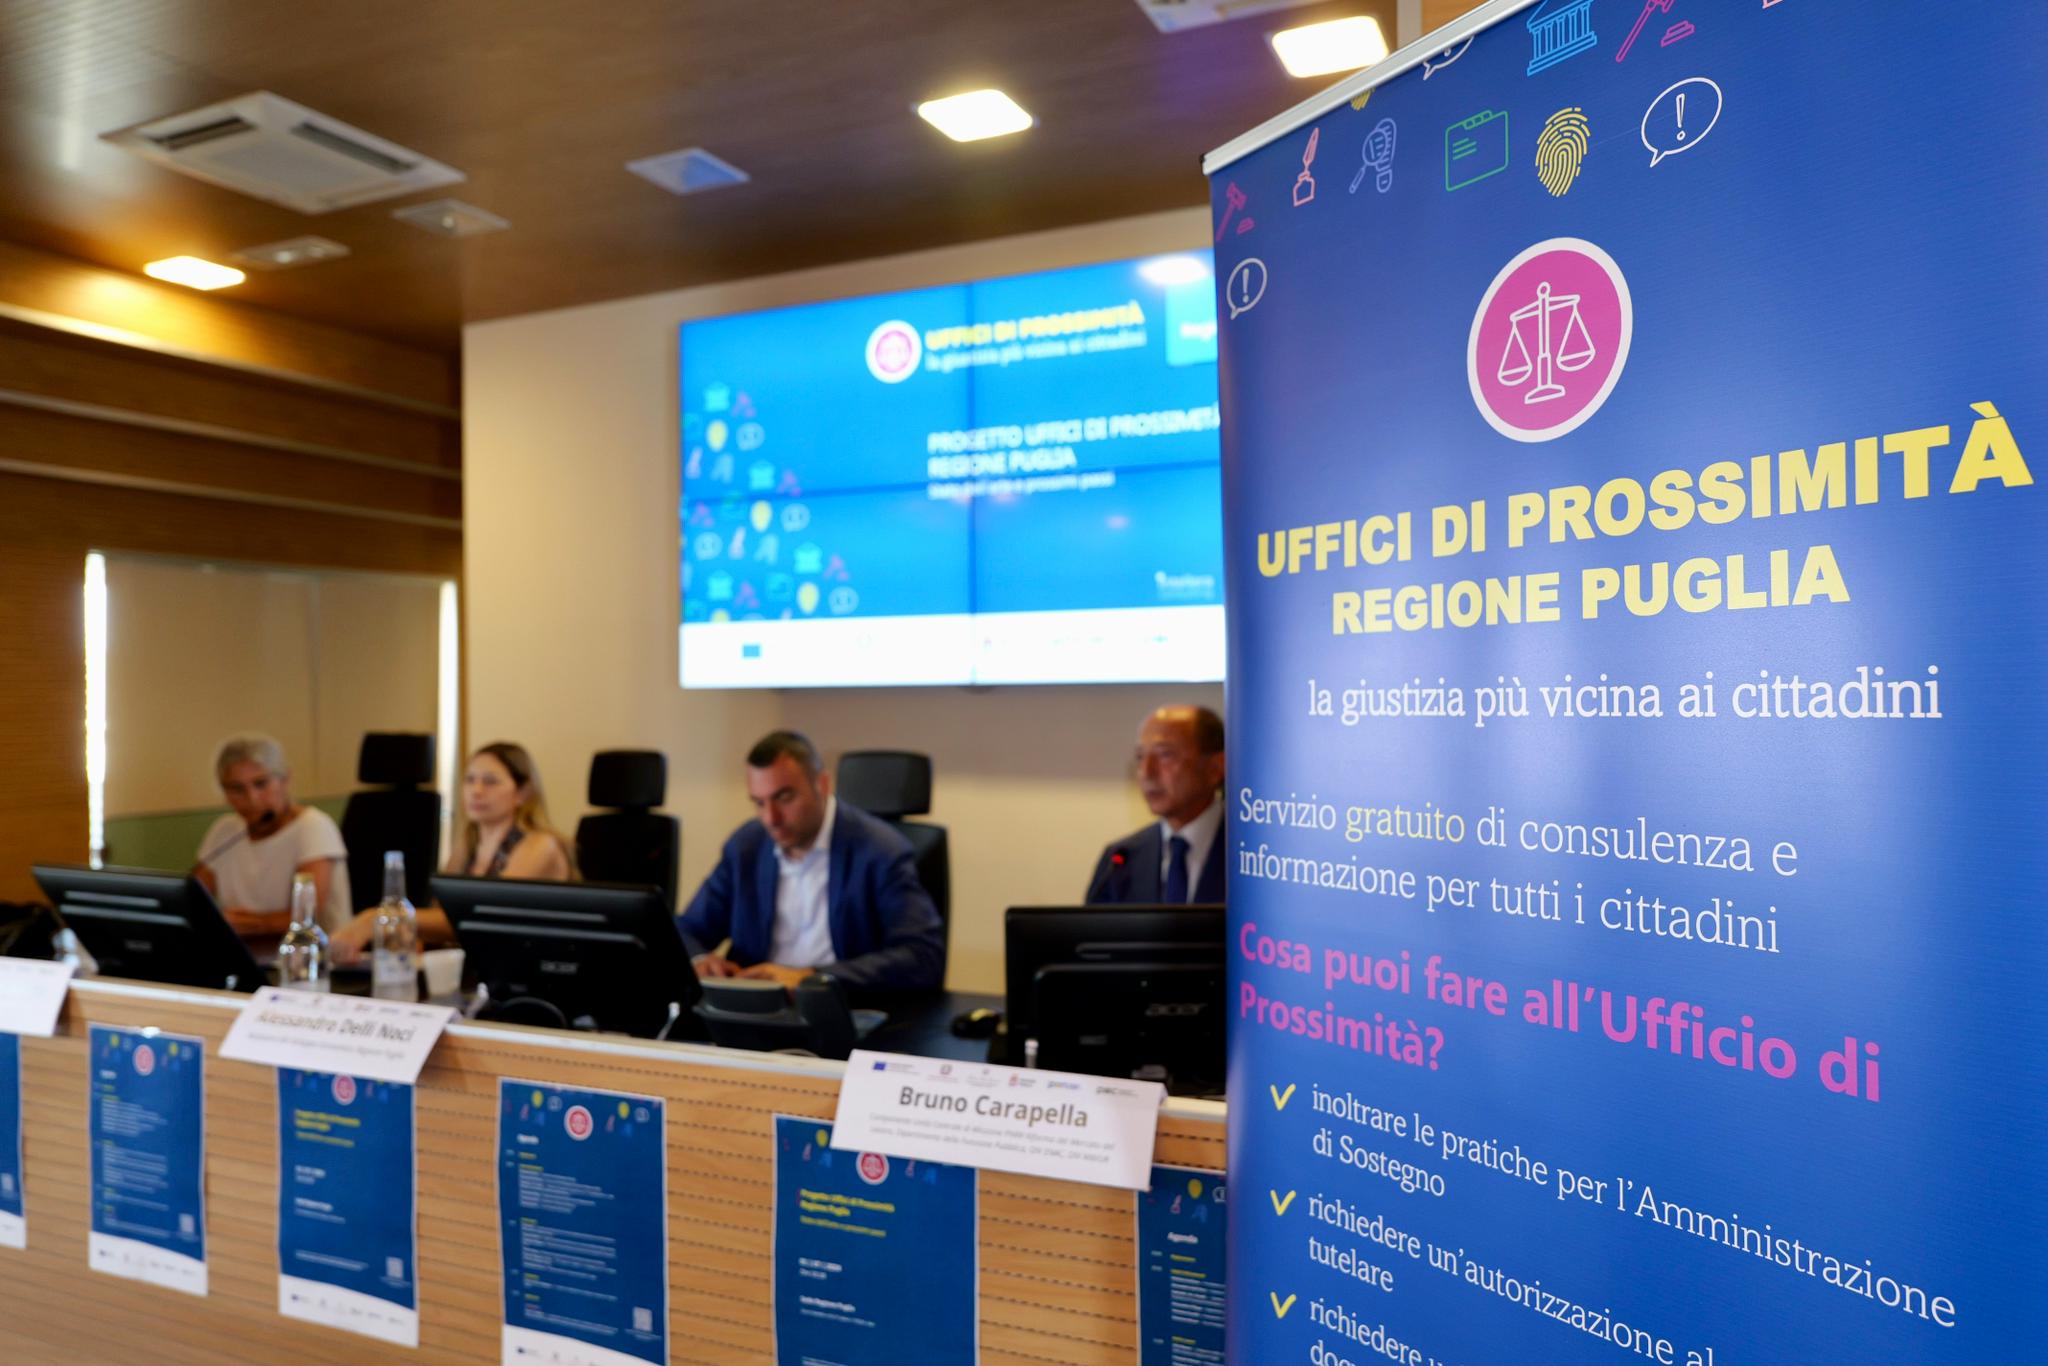 Galleria Il Progetto Uffici di Prossimità in Puglia: un passo concreto verso una giustizia più equa e accessibile - Diapositiva 2 di 4